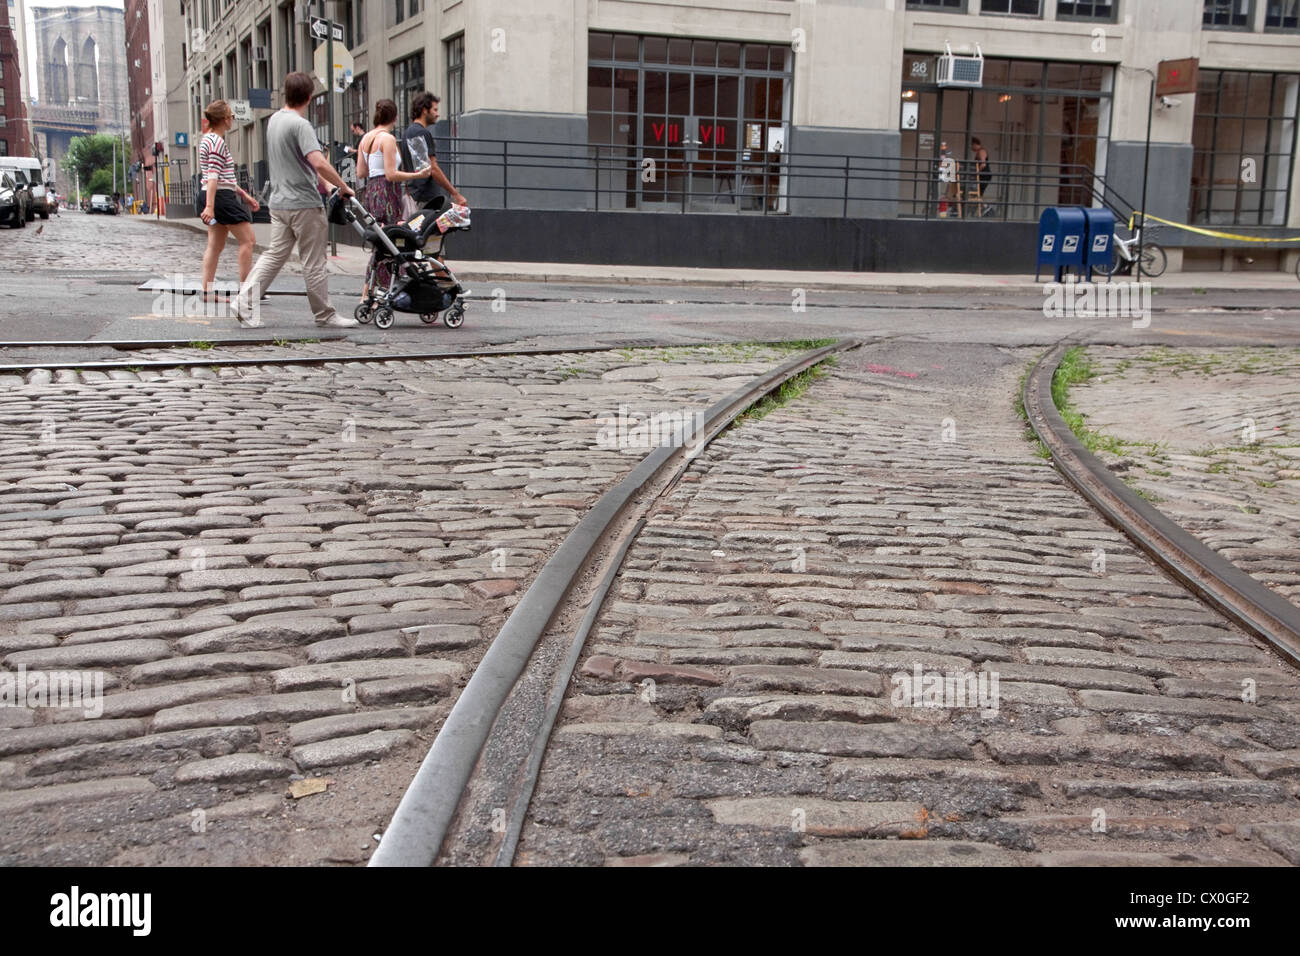 Touristen schlendern Sie entlang der alten Kopfsteinpflasterstraßen & trolley Tracks im DUMBO Abschnitt von Brooklyn, New York, vorbei an Fotoagentur VII. Stockfoto